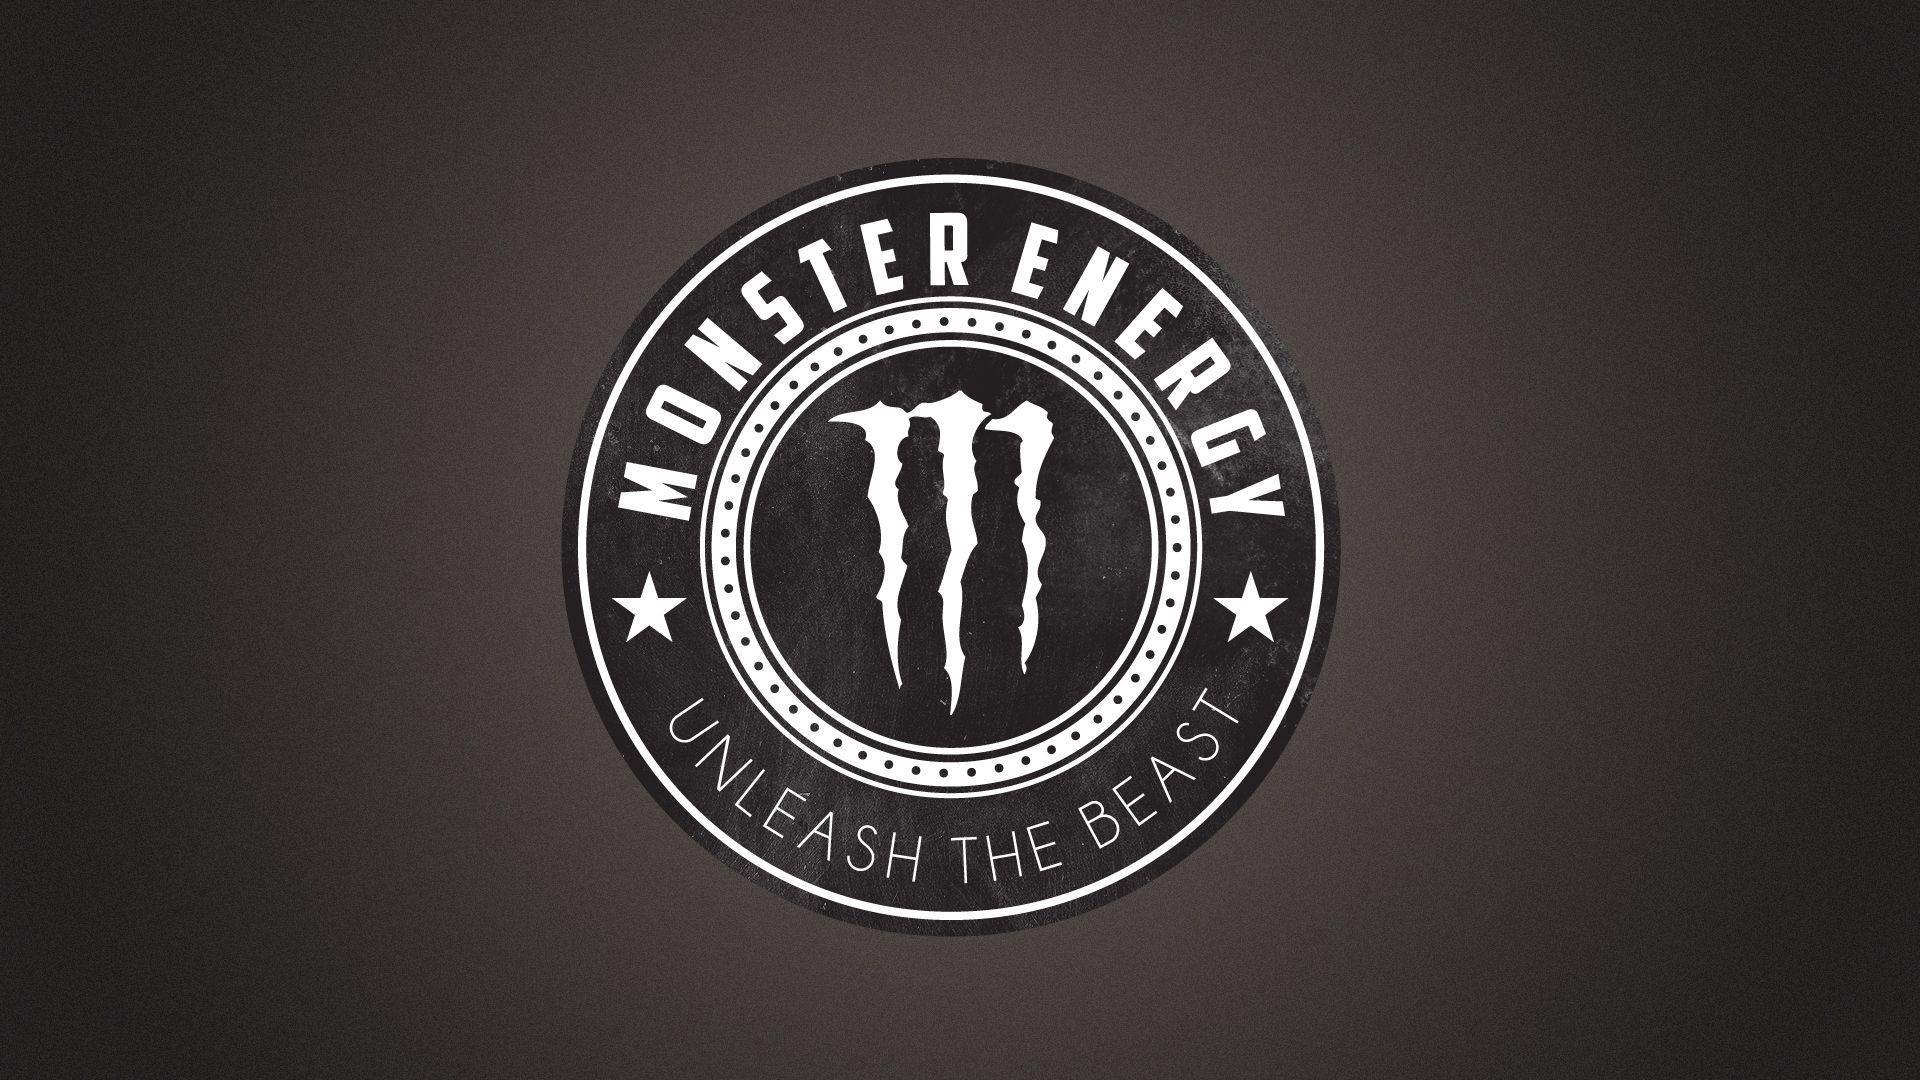 Black and White Monster Energy Logo - Monster Energy Wallpapers HD 2016 - Wallpaper Cave